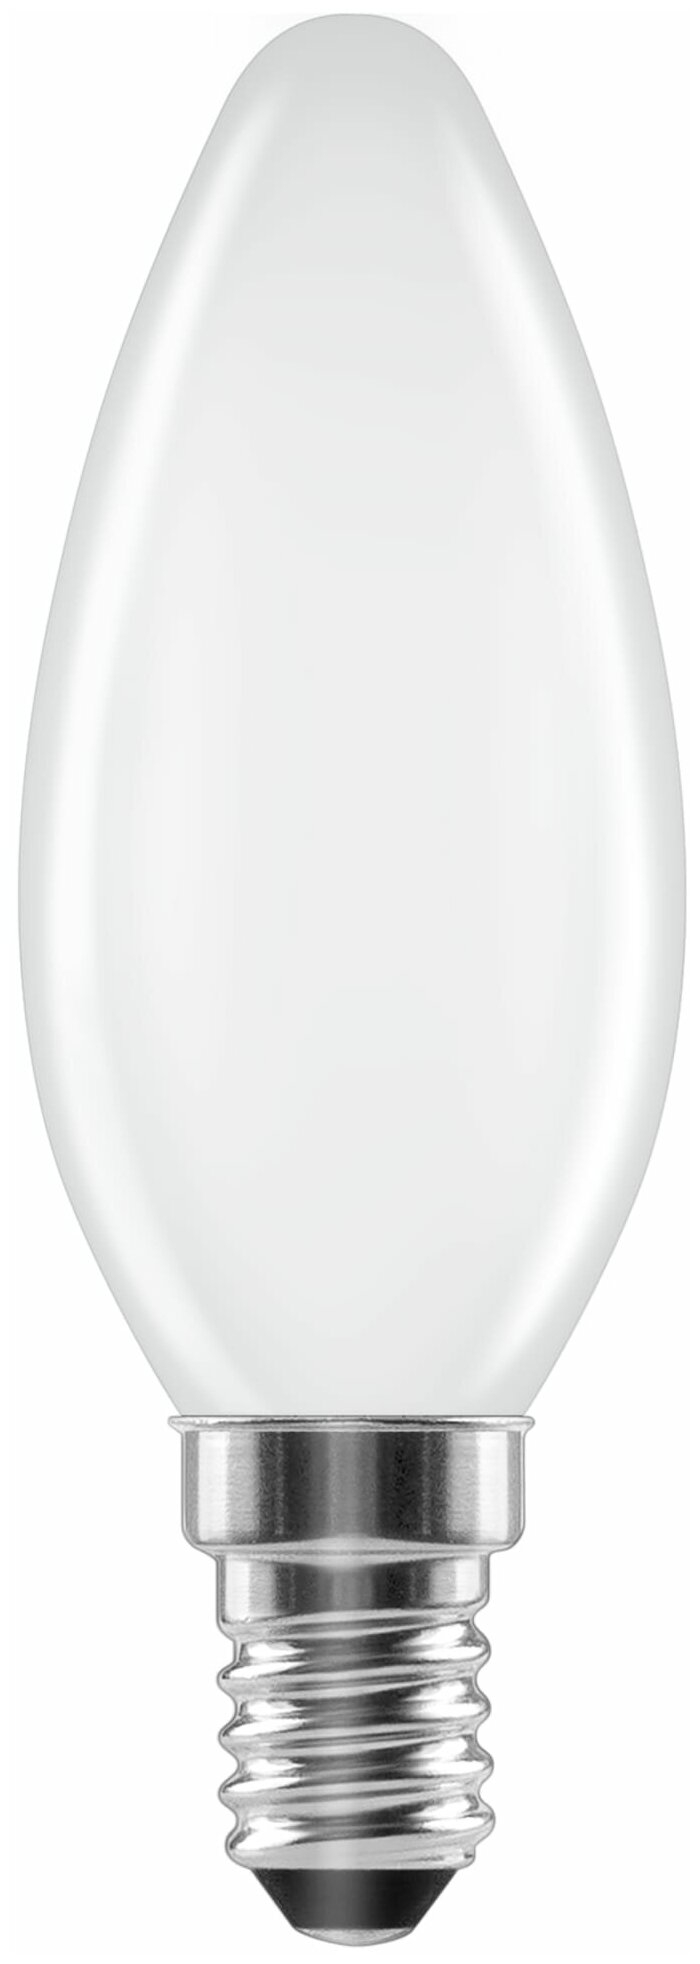 Светодиодная лампа Lexman, E14, 220-240 В, 6 Вт, свеча матовая, 750 лм, теплый белый свет - фотография № 1